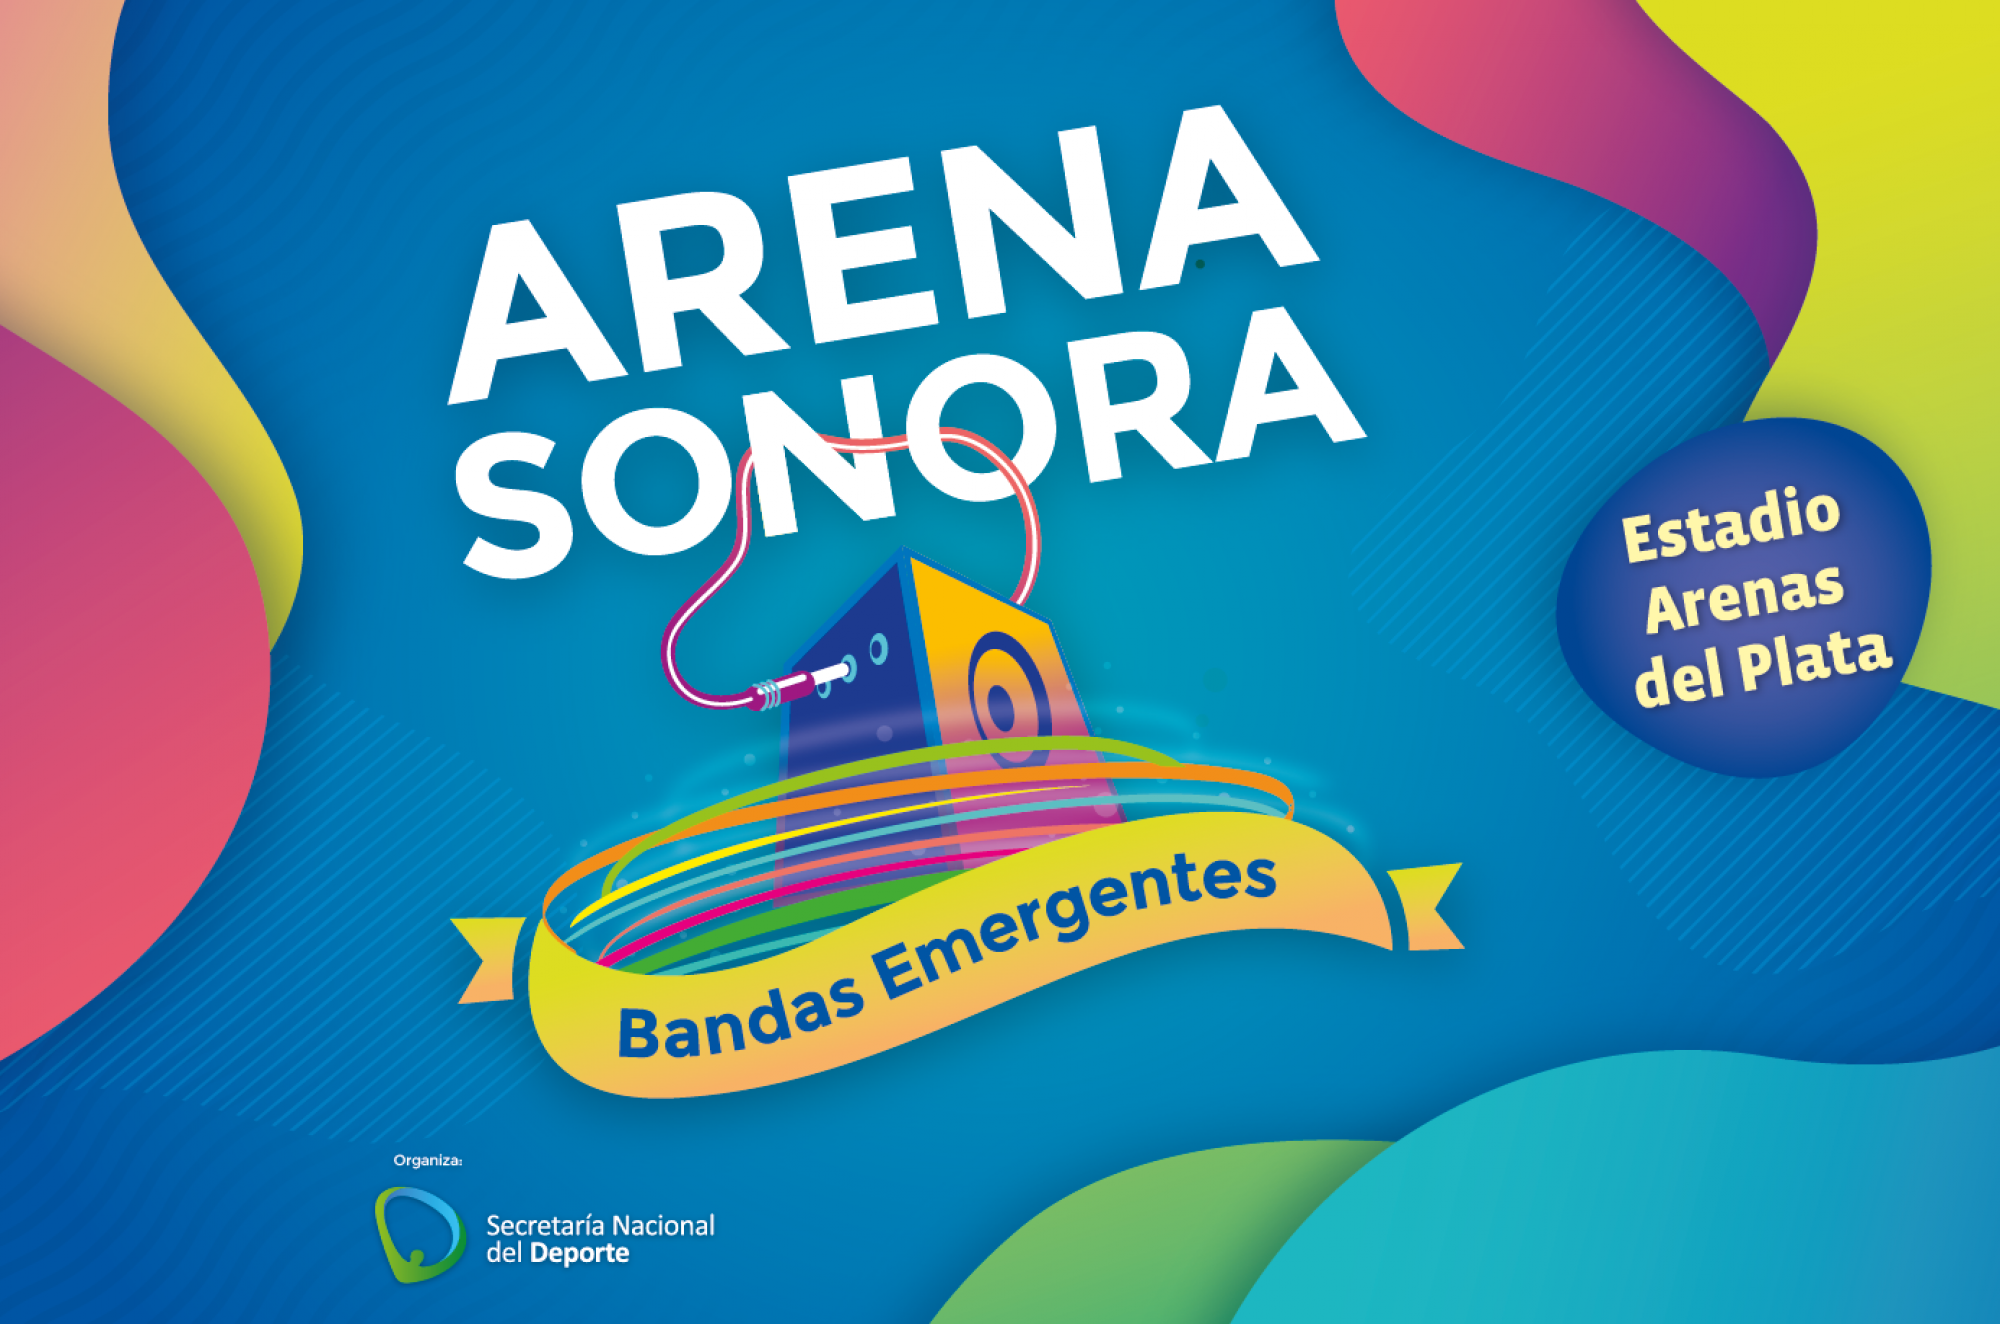 Arena Sonora 2019